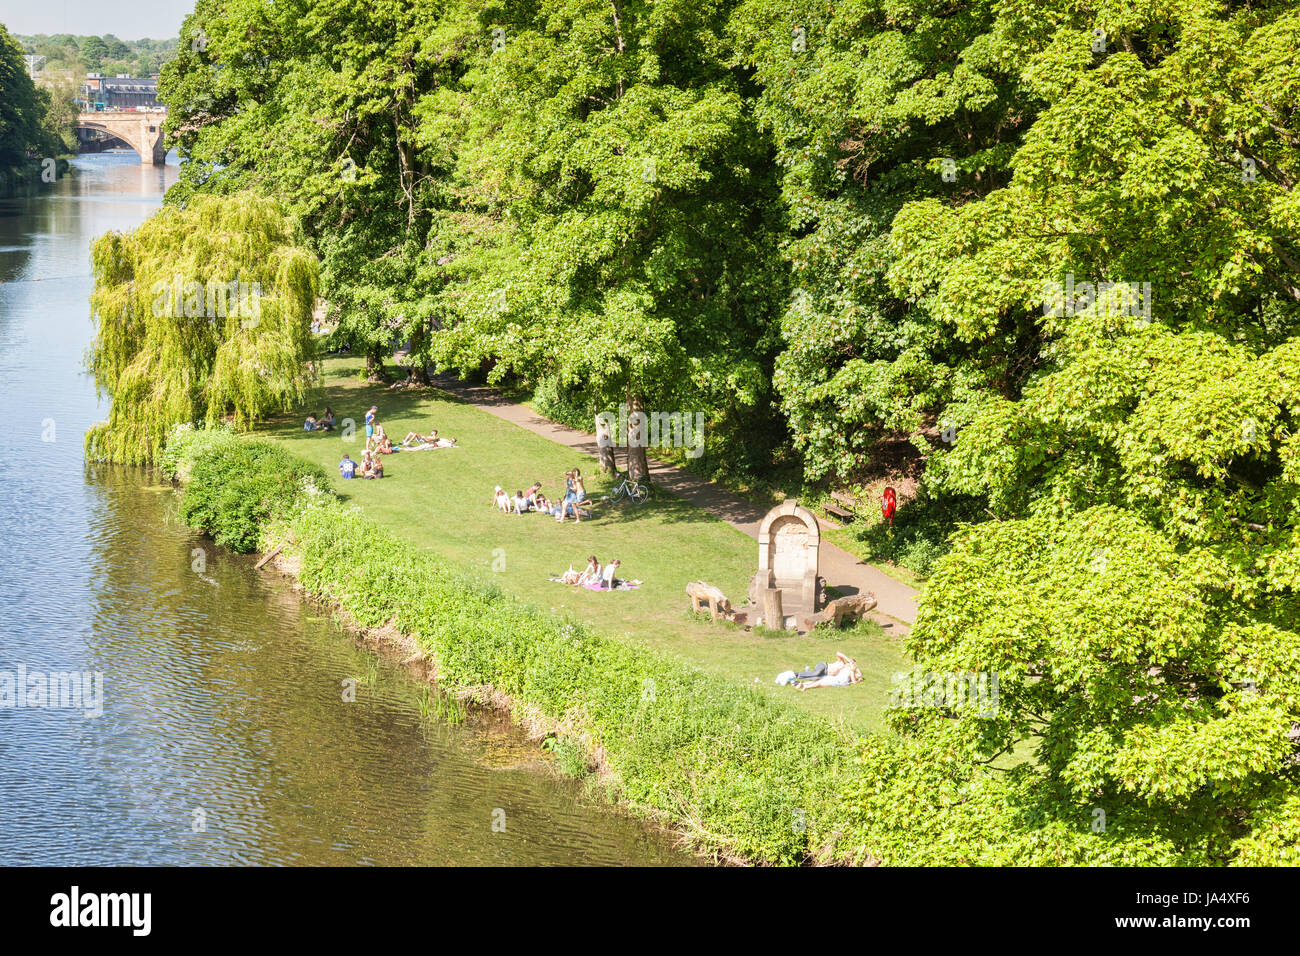 25 Mai 2017 : ville de Durham, County Durham, England, UK - les gens se détendre sur l'herbe sur les bords de la rivière Wear. Banque D'Images